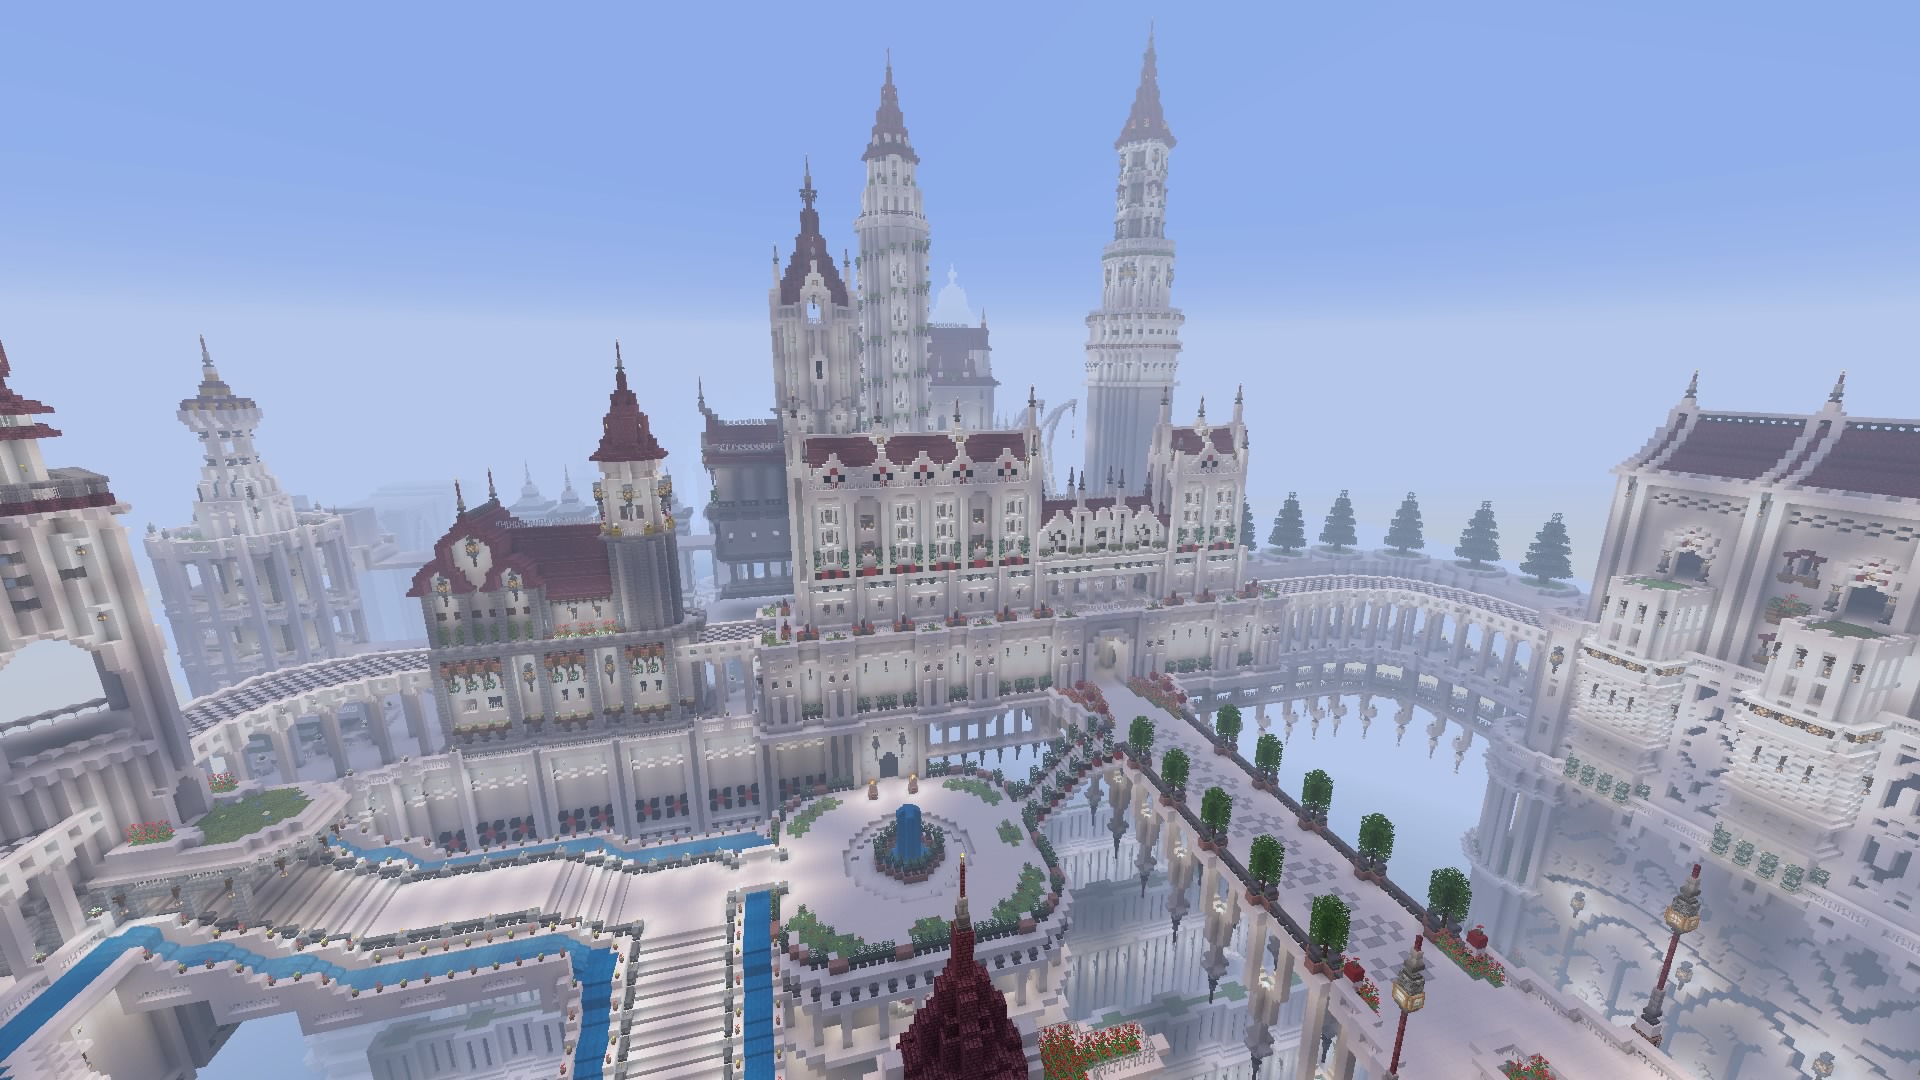 ゲームヤハギ Minecraft マインクラフト マイクラ Minecraftお城建築対決 完成です お城建築は初めてですしこういったイベント参加も初めてなのでお誘いを頂いた時は緊張しましたがめっちゃ頑張りました T Co 6c41lgsbxa Twitter